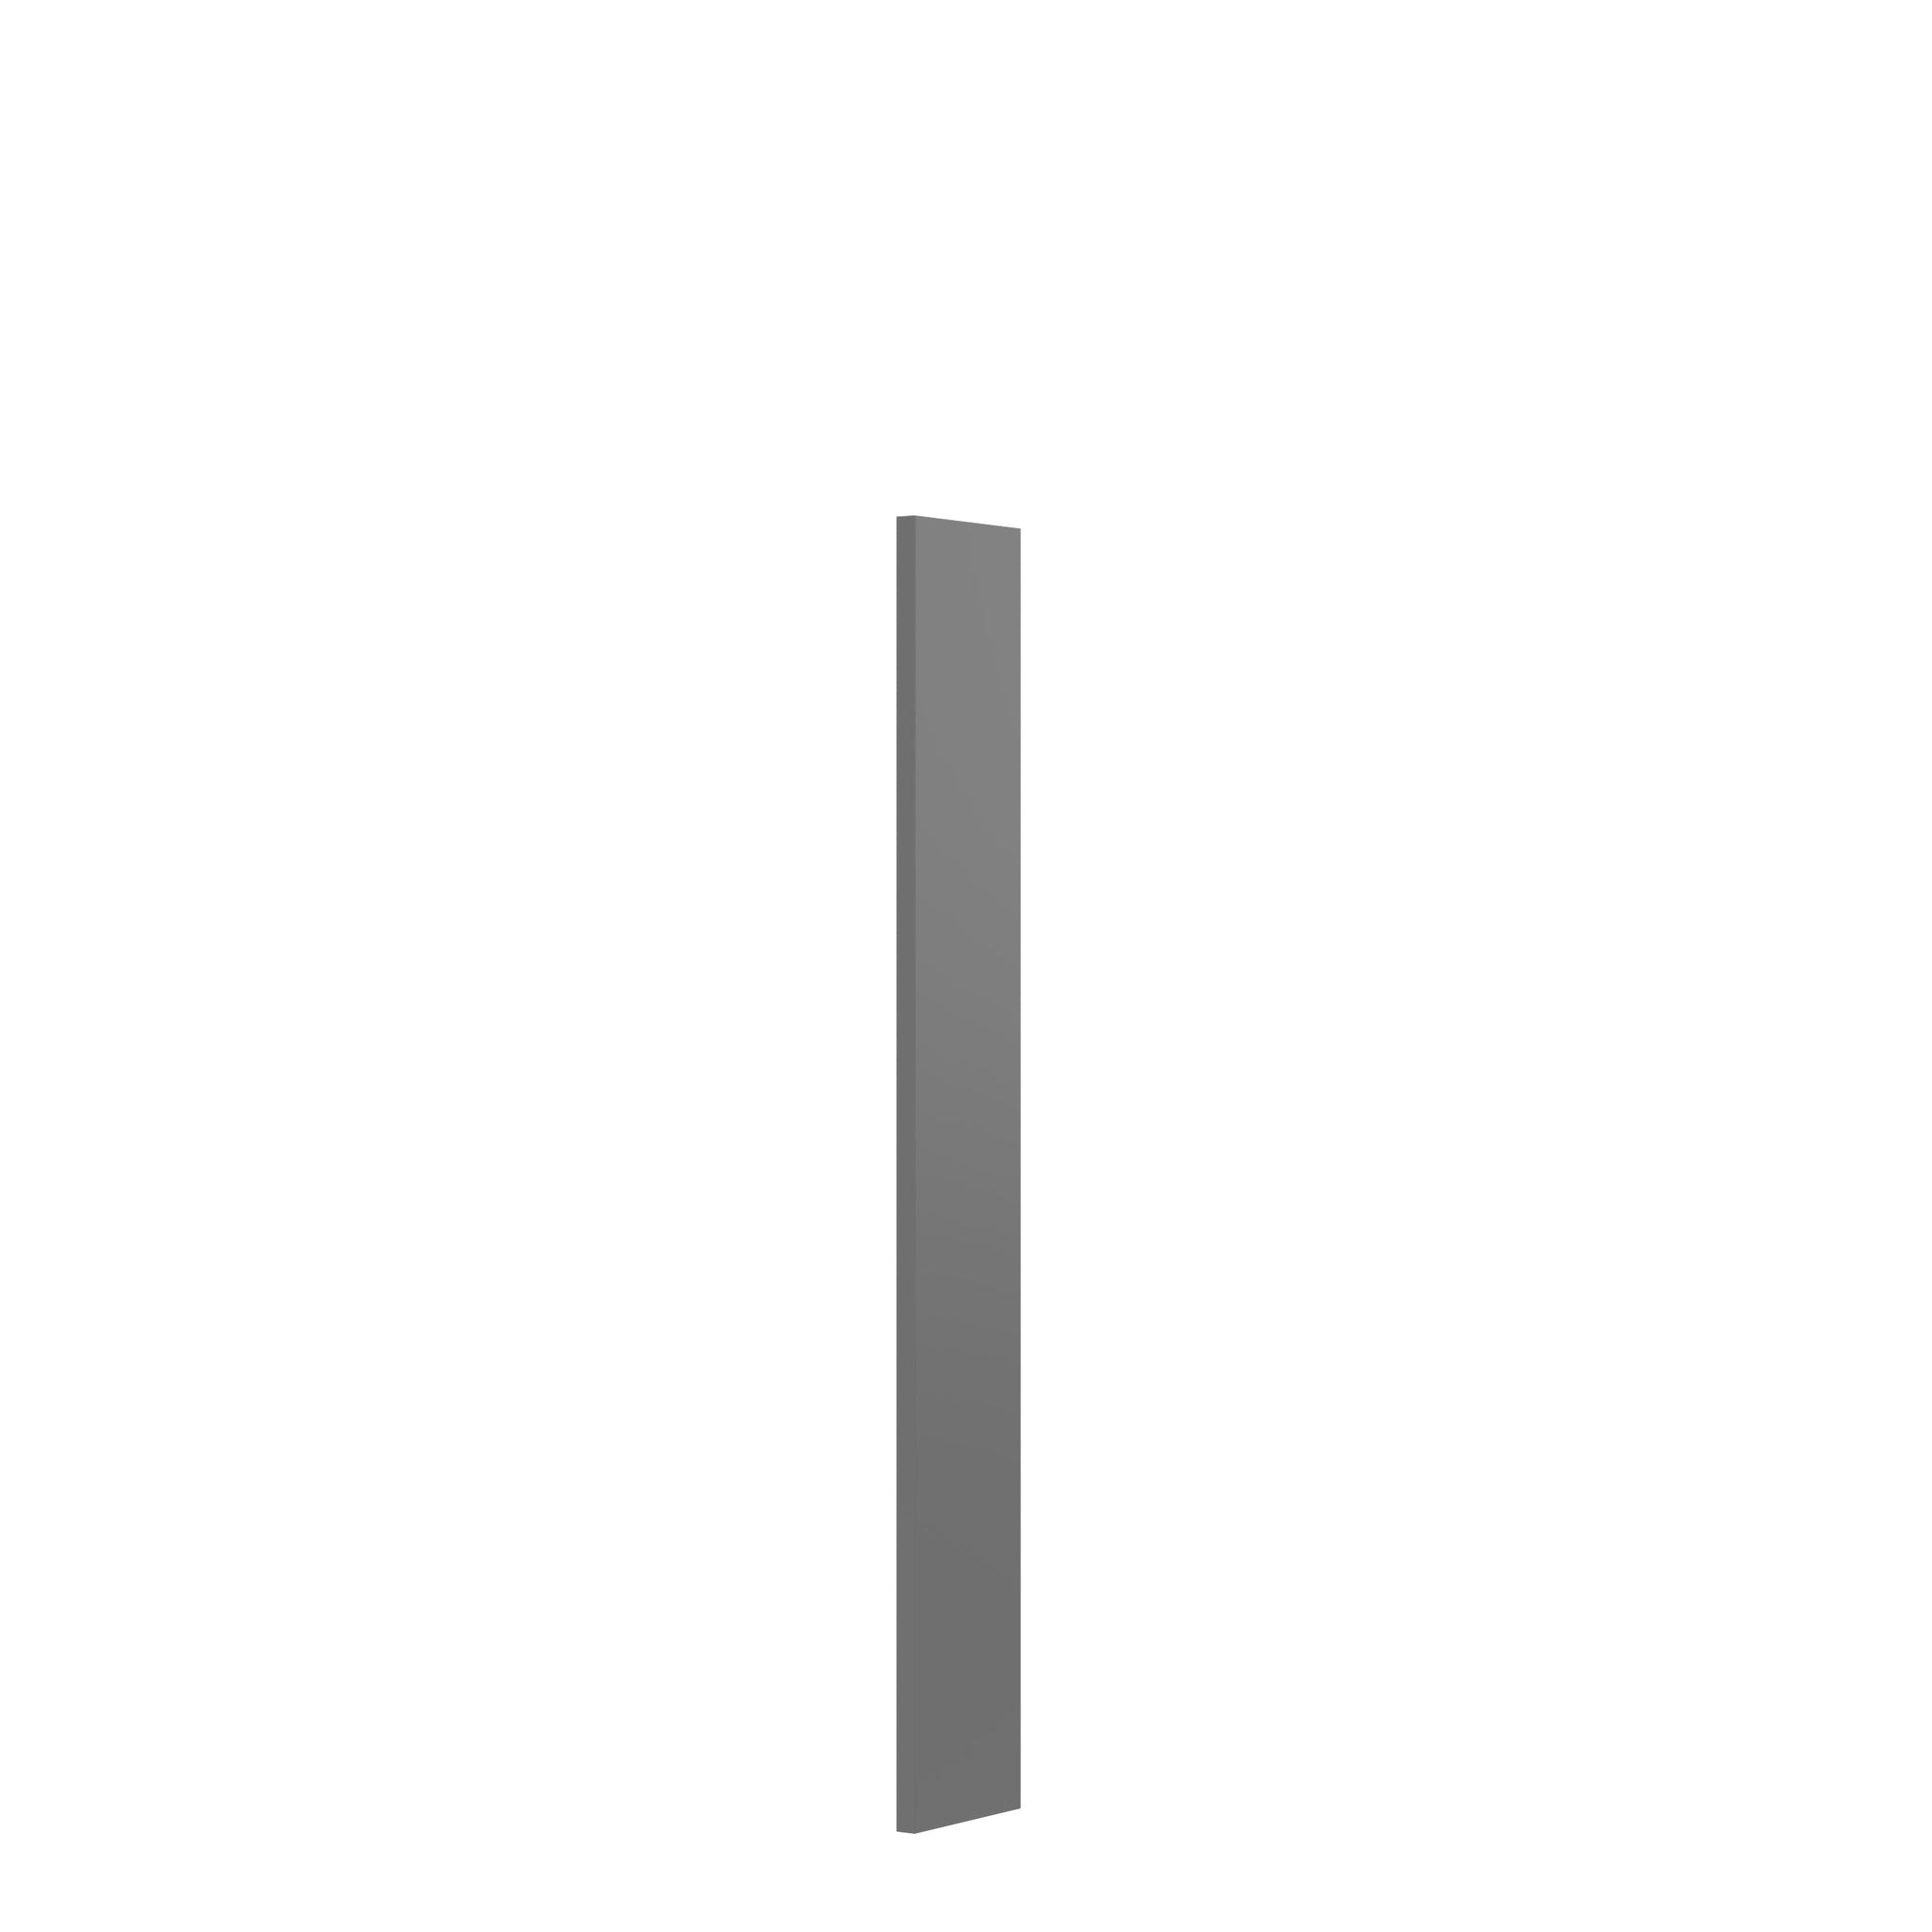 RTA - Elegant Dove - Wall Filler | 3"W x 42"H x 0.75"D